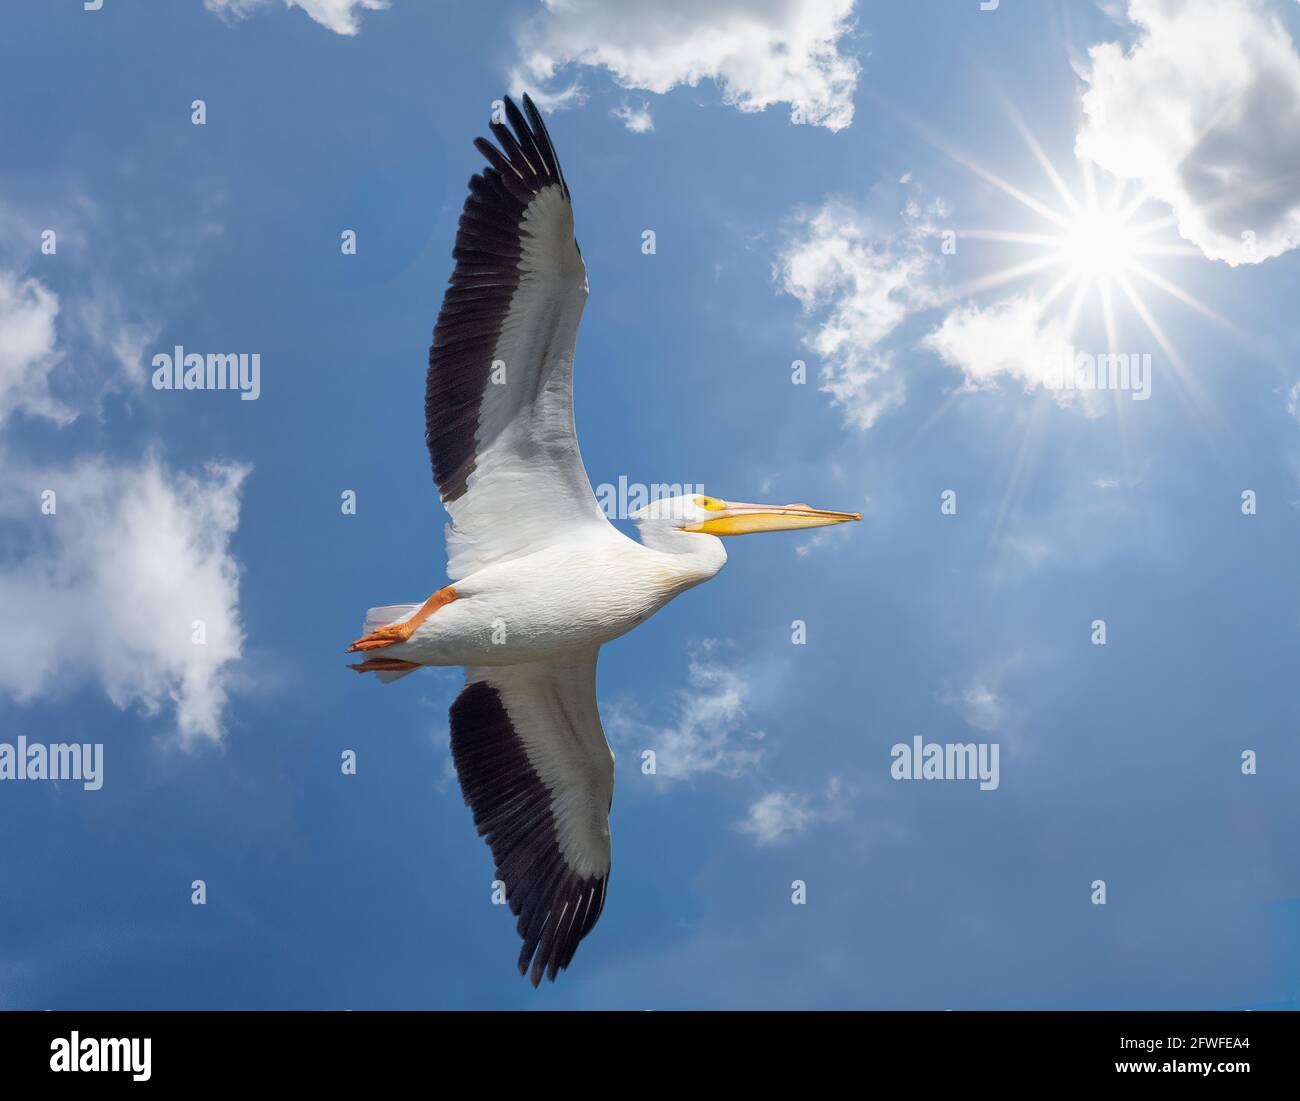 Un pélican blanc qui s'envolent dans un ciel bleu avec des nuages blancs et le soleil éclate dans le ciel au-dessus de l'oiseau Banque D'Images